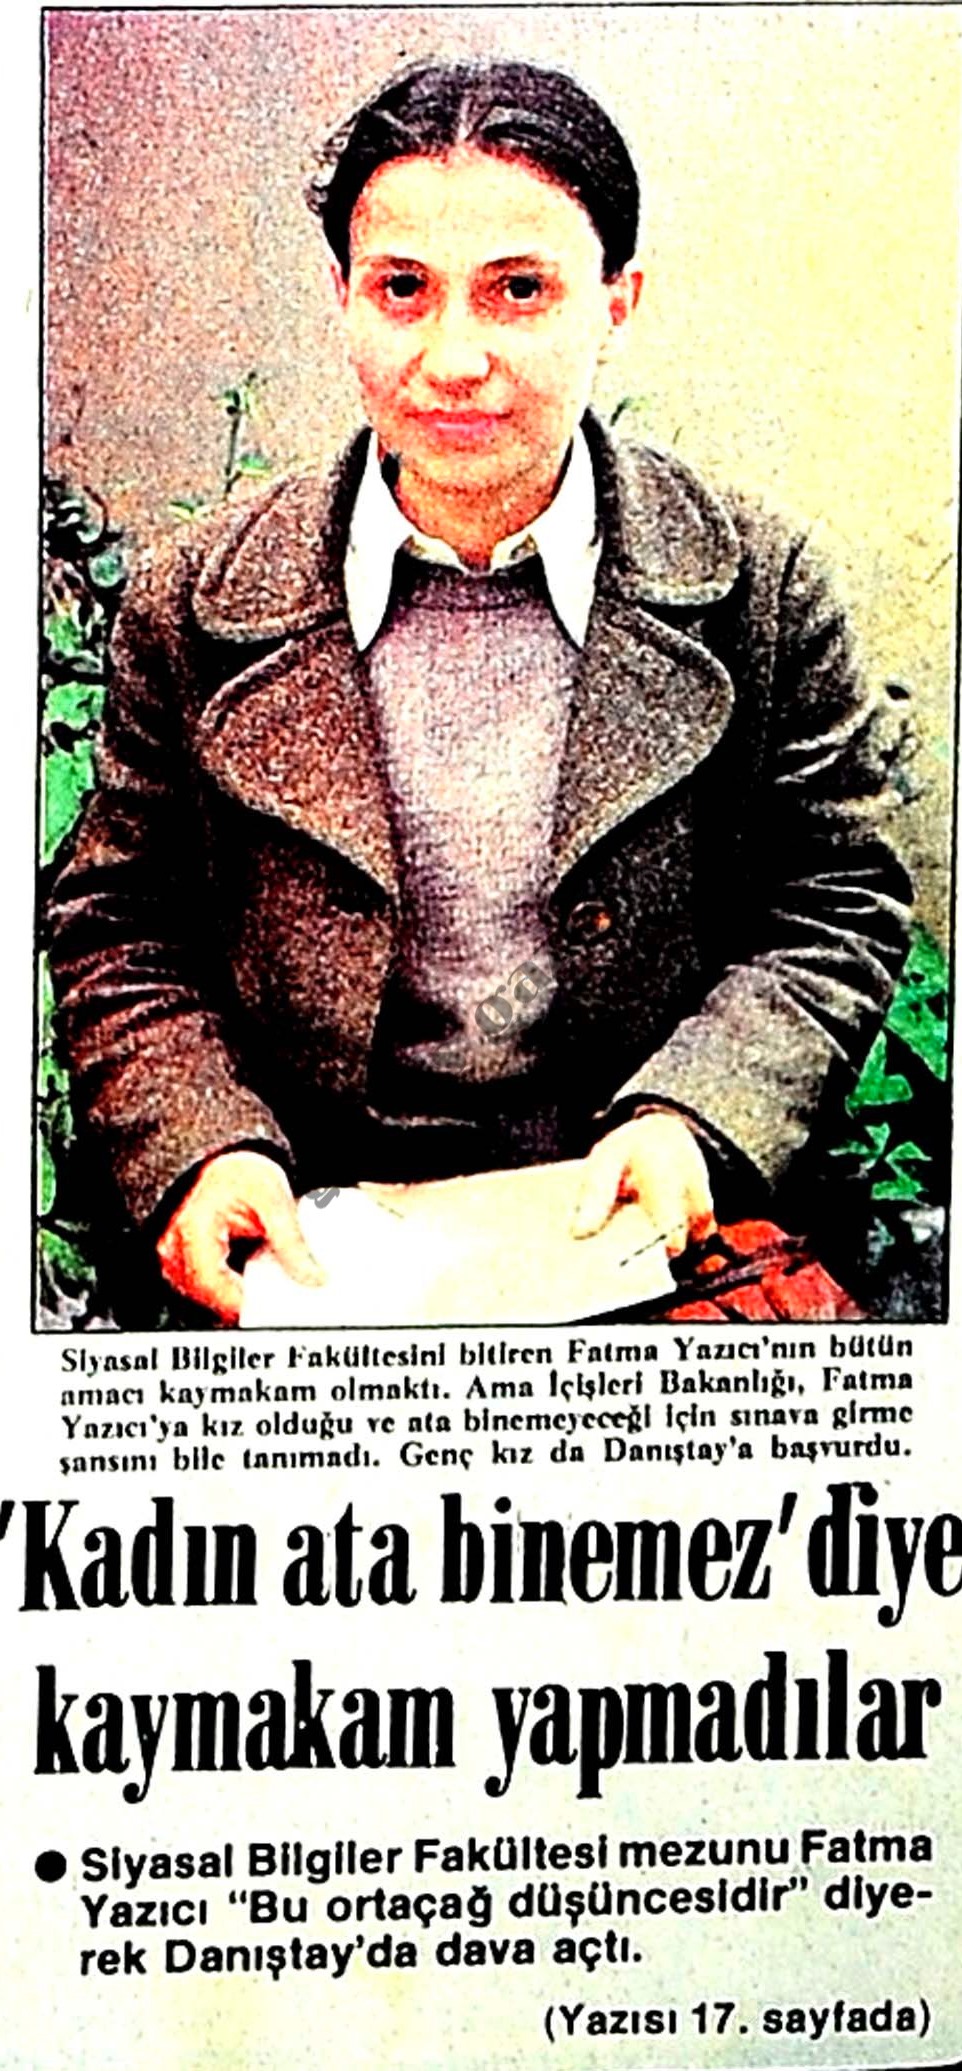 Siyasal Bilgiler Fakültesi 1979 mezunu Fatma Yazıcı, ‘ata binemez’ diye kaymakam yapılmamıştı (Hürriyet, 16.05.1980)